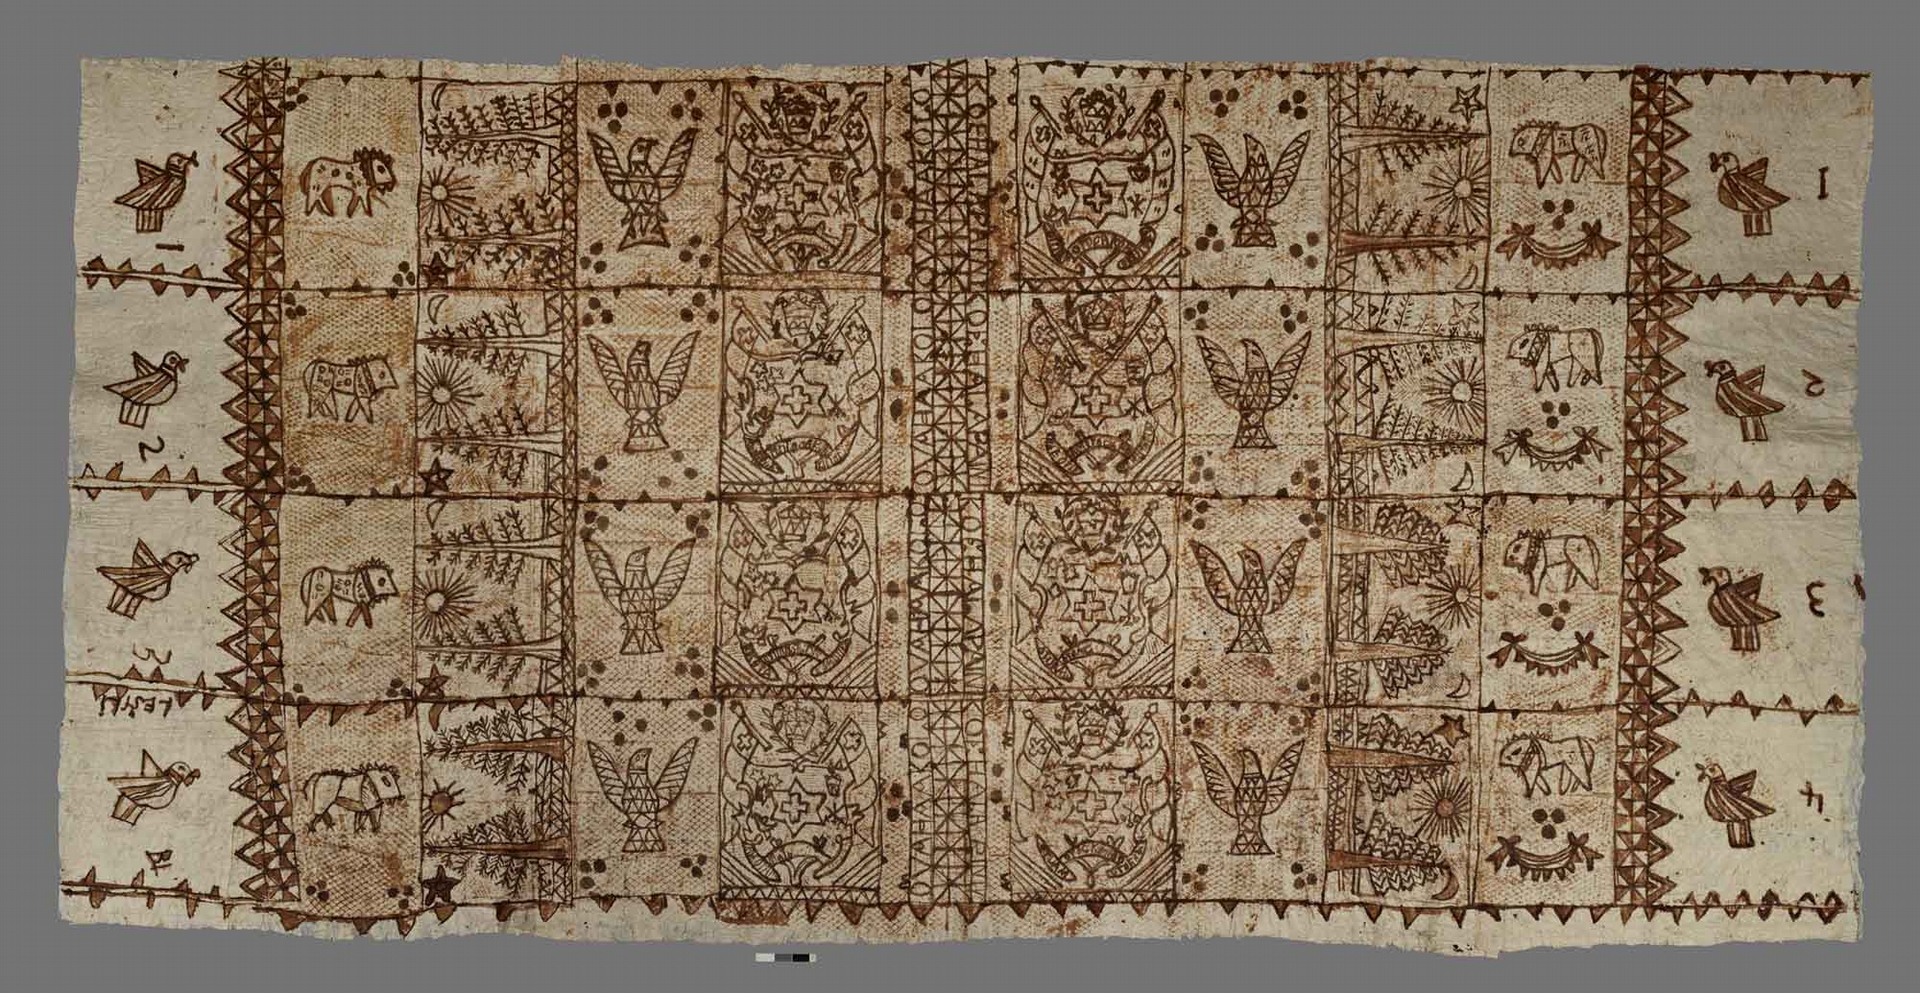 1970 年代出產的東加王國樹皮衣，由構樹樹皮製成，花紋內容包含東加社會重視的動物、植物以及國徽。圖片來源│The British Museum (CC BY-NC-SA 4.0)